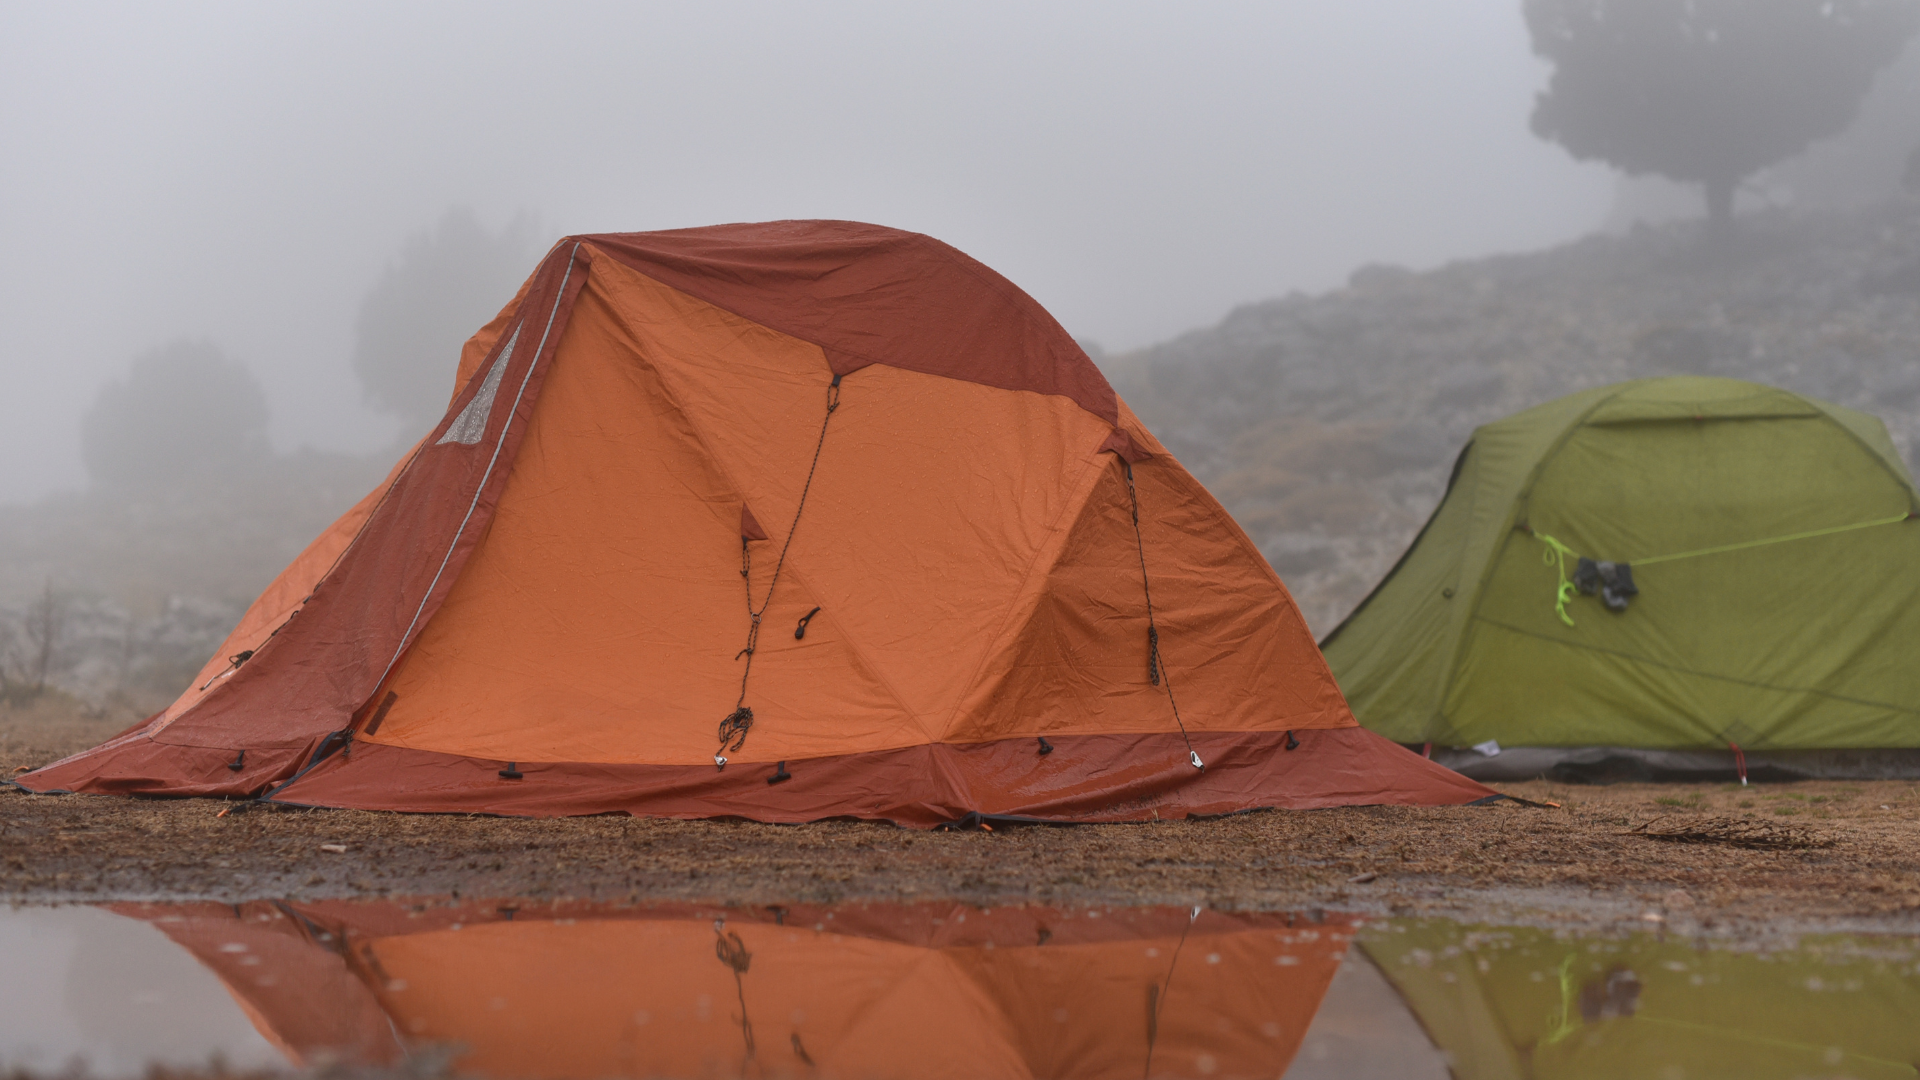 Tents at rainy campsite